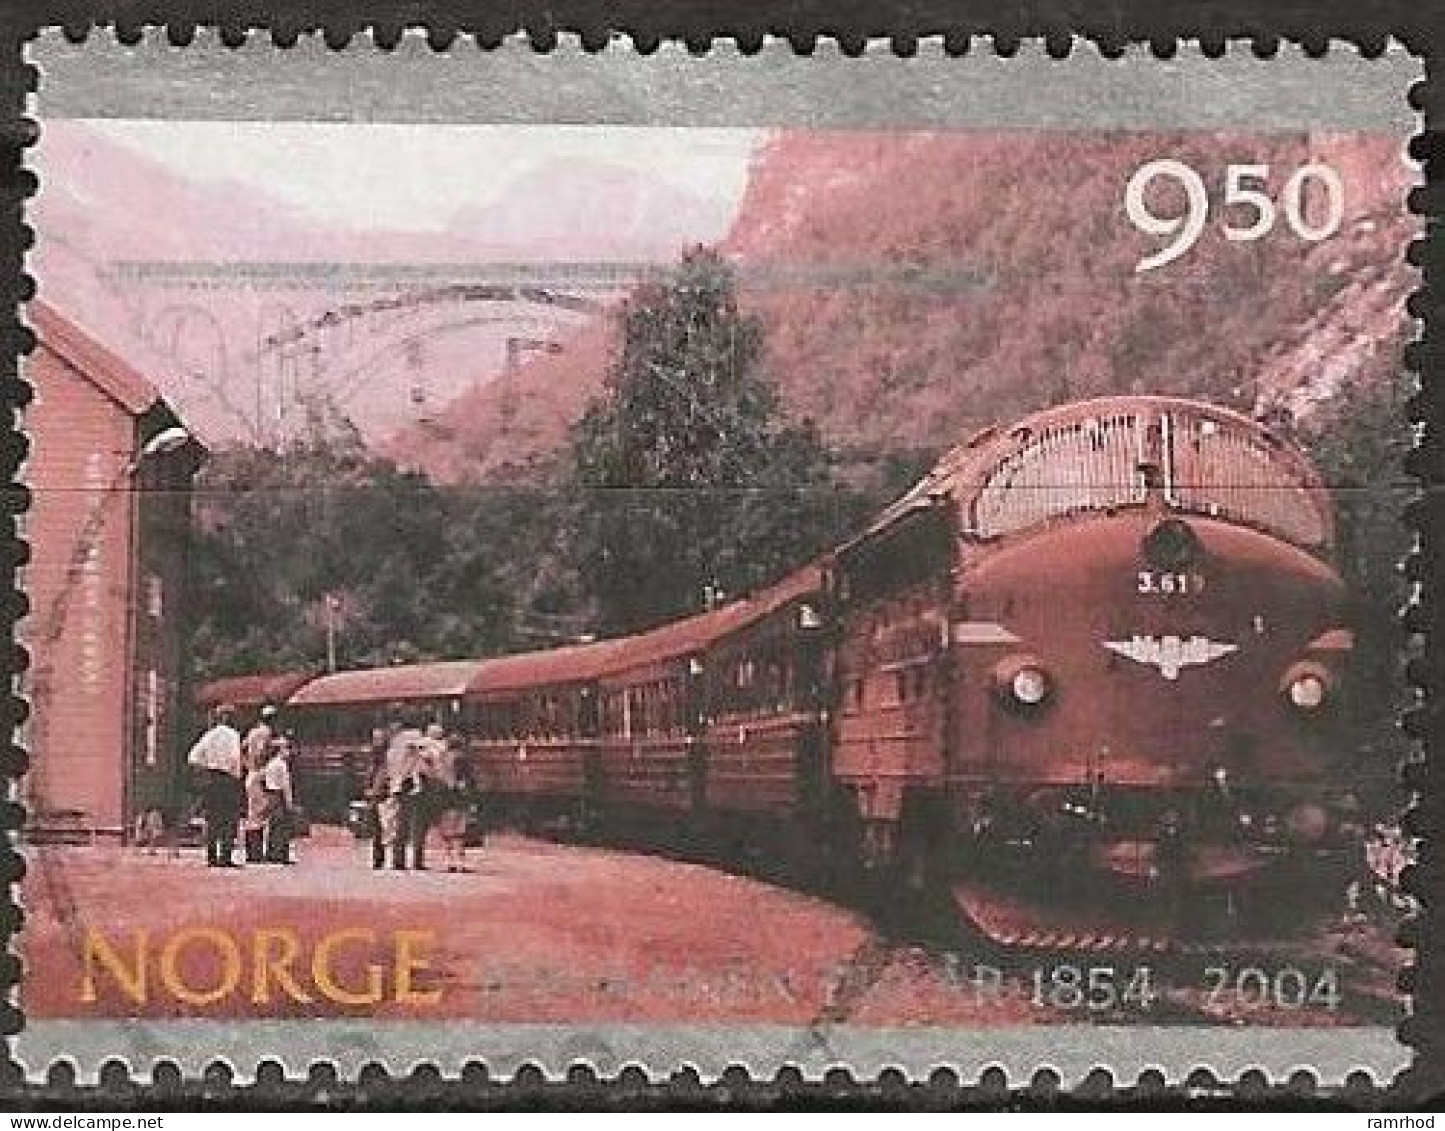 NORWAY 2004 150th Anniversary Of Norwegian Railways - 9k.50 - Early Diesel Locomotive, Flatmark Halt FU - Used Stamps